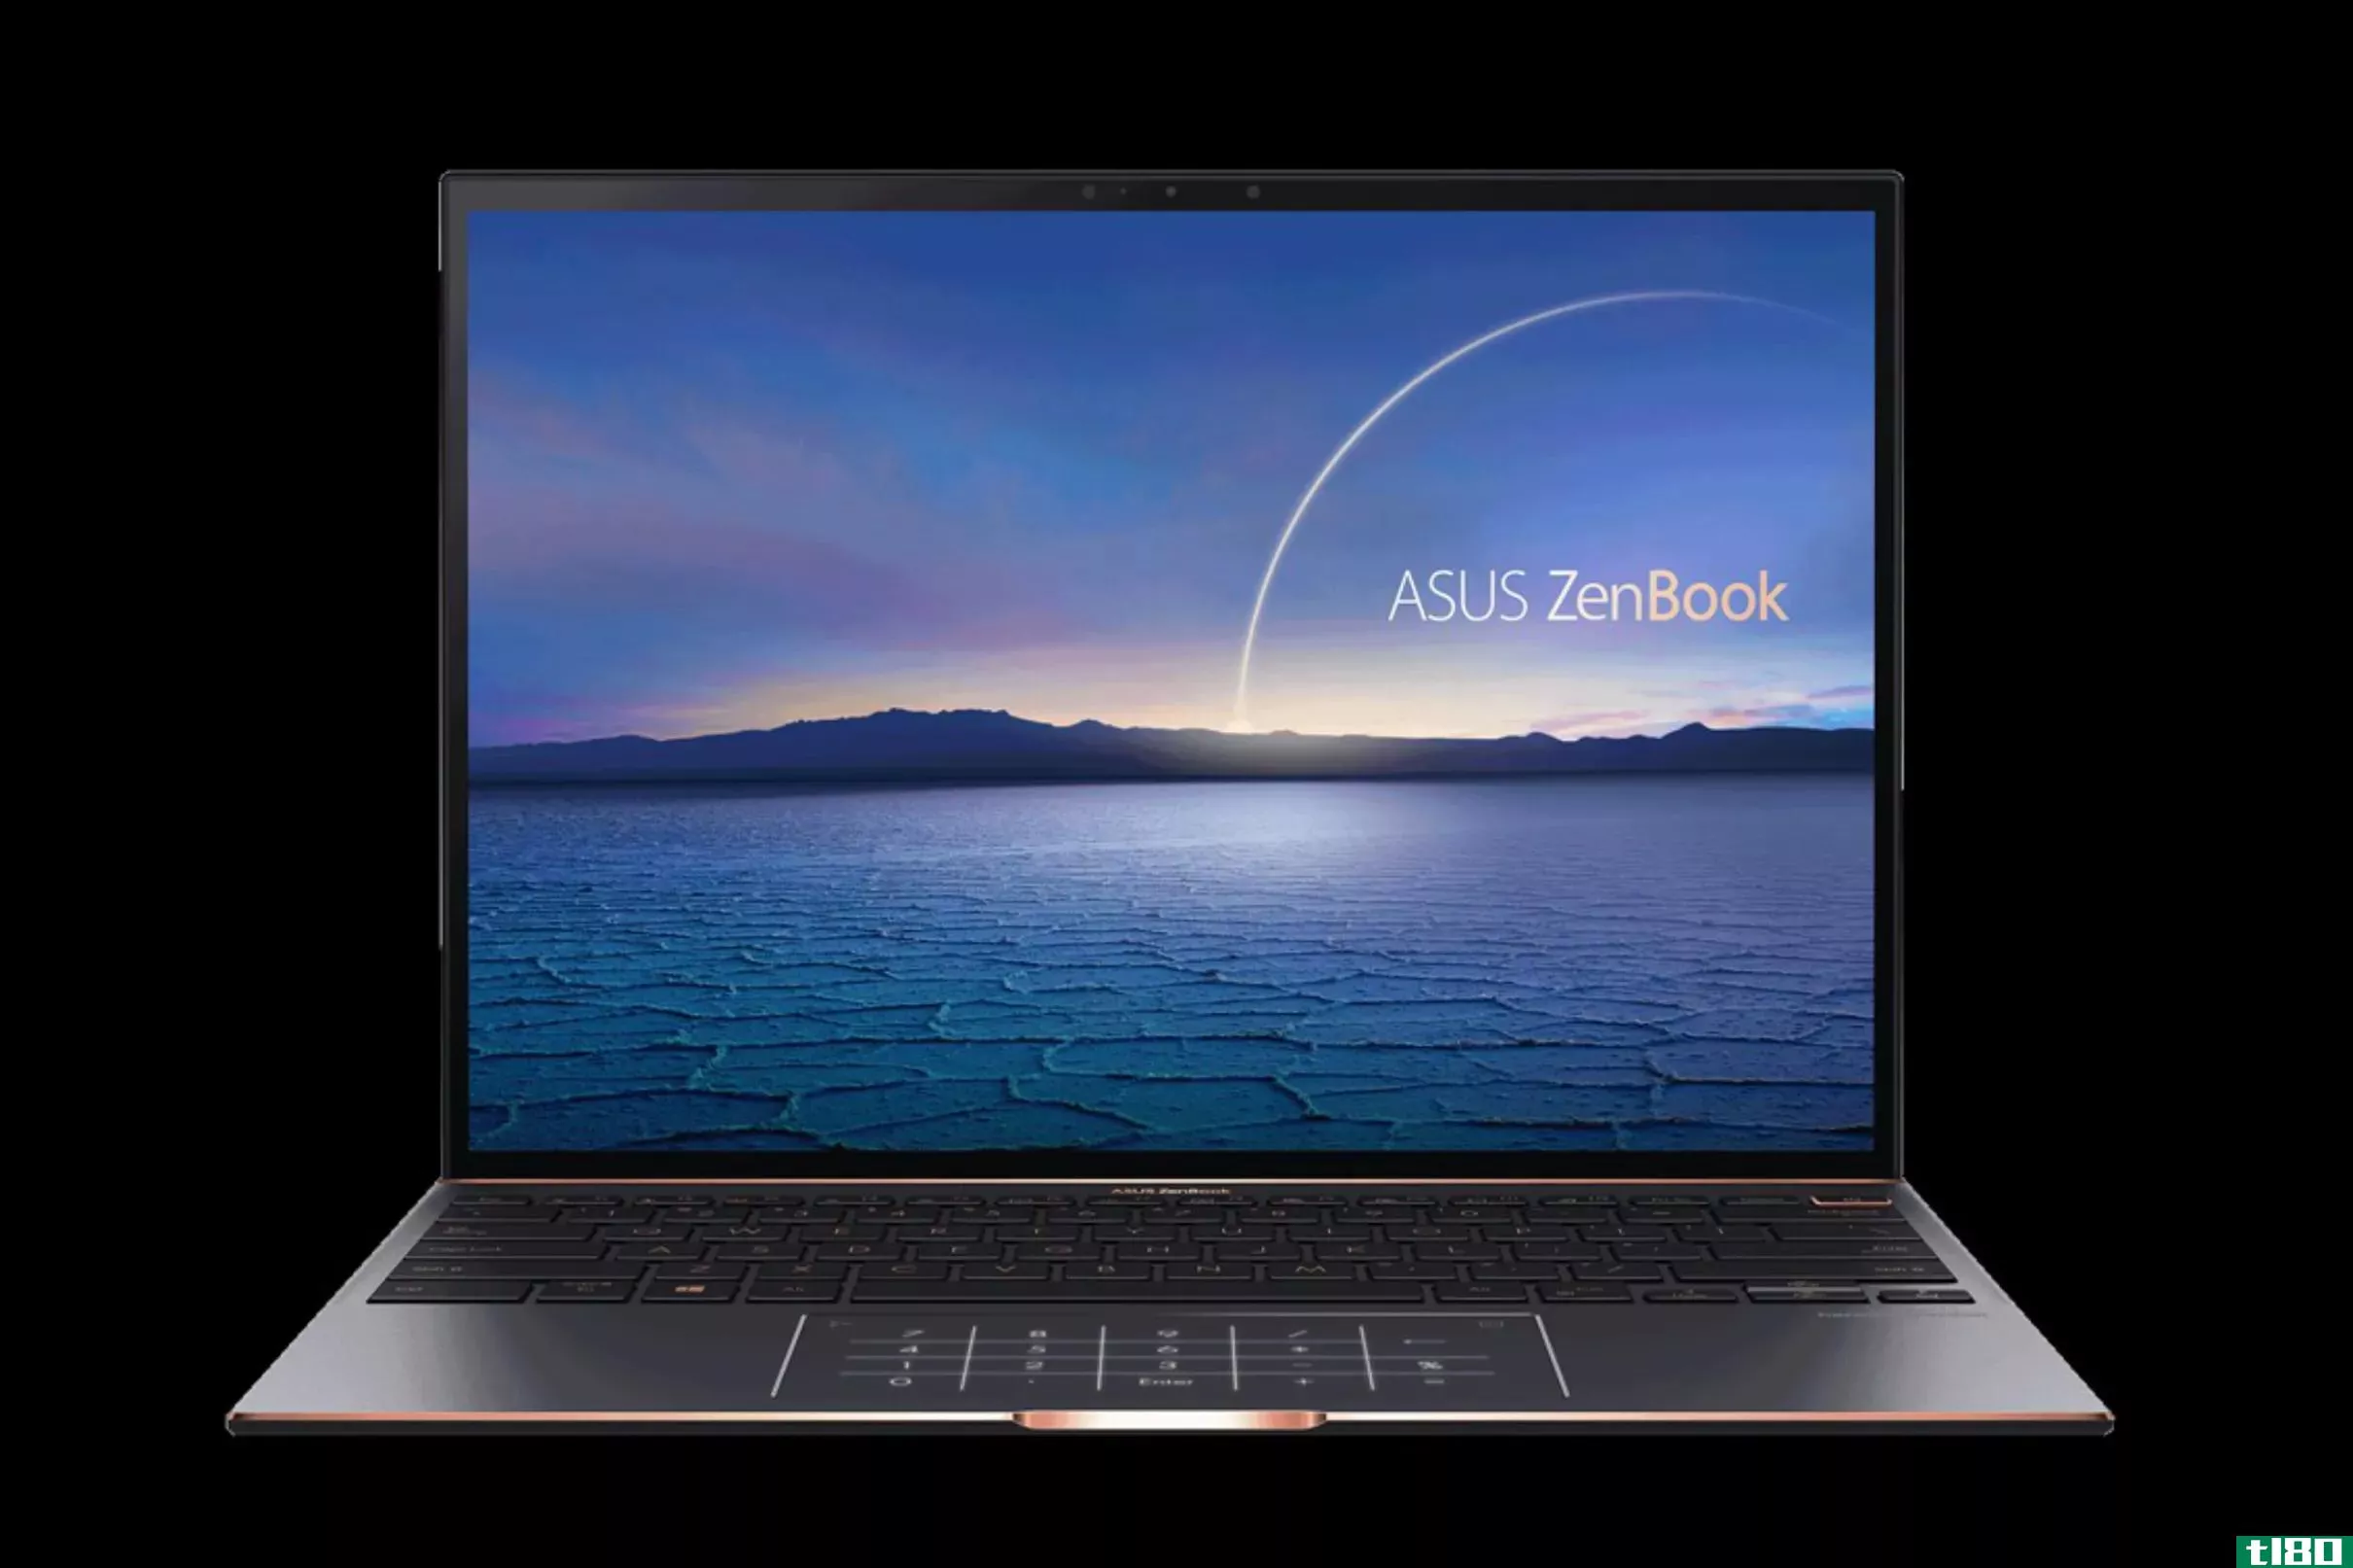 华硕的新款zenbook s采用像素压缩的3:2宽高比显示器